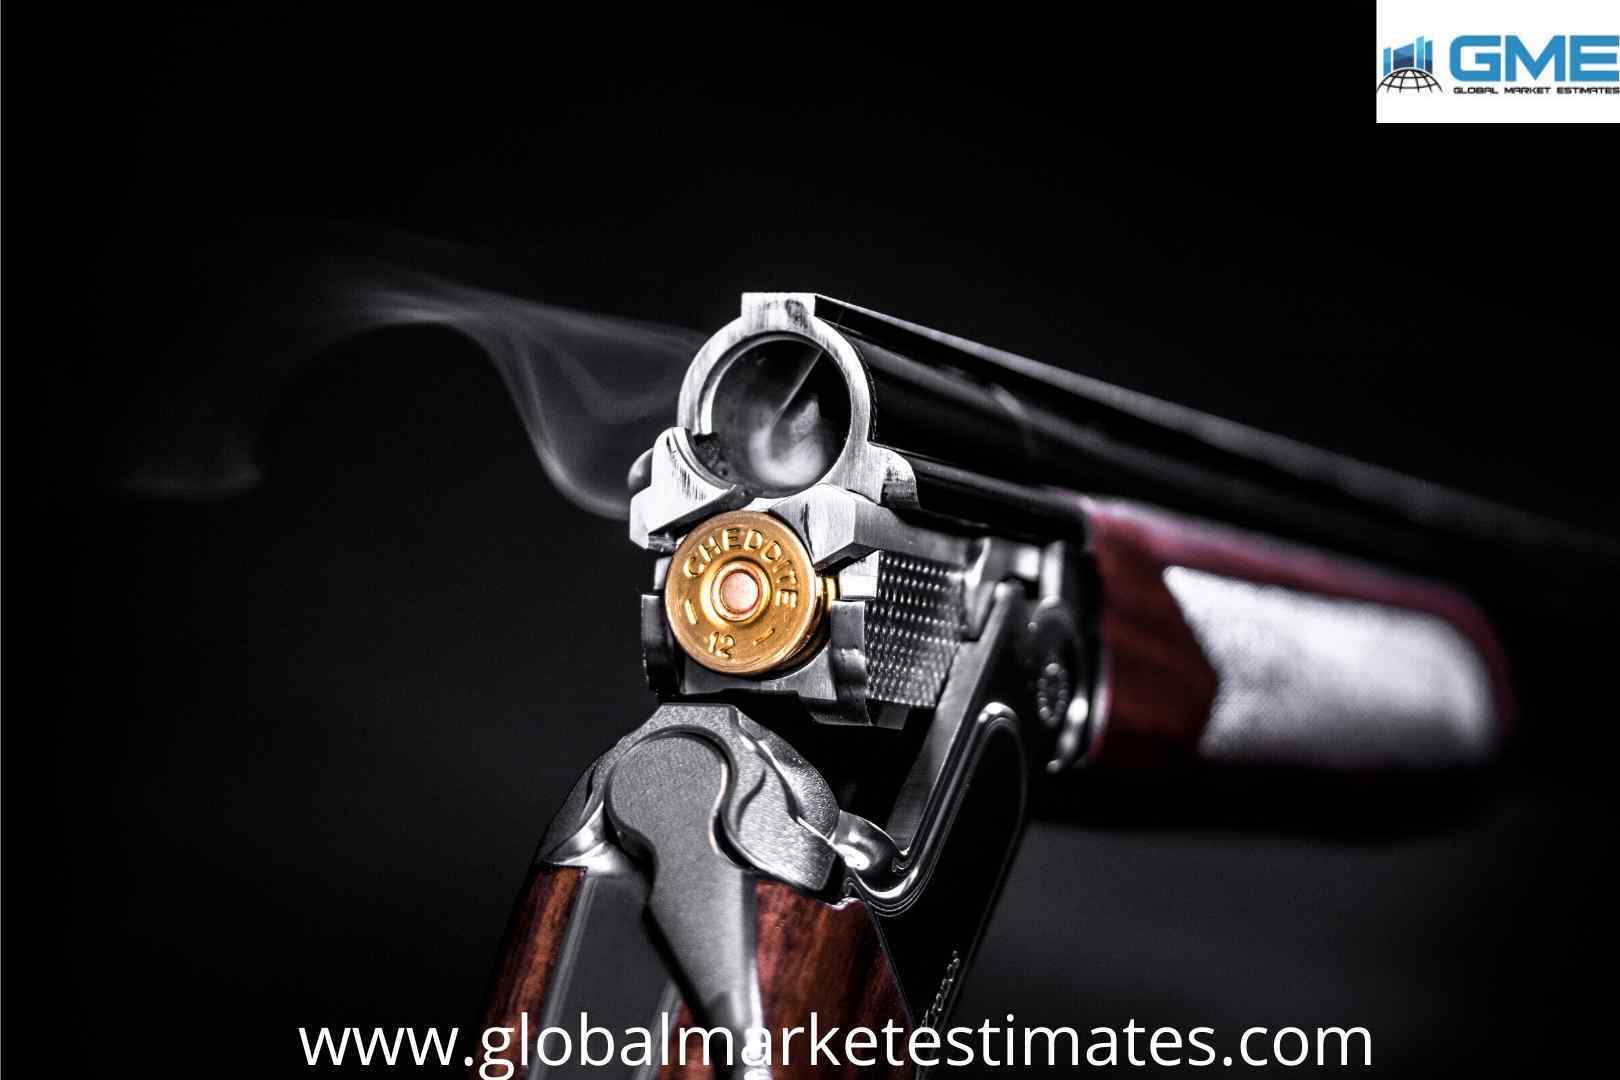 Global Firearms Market